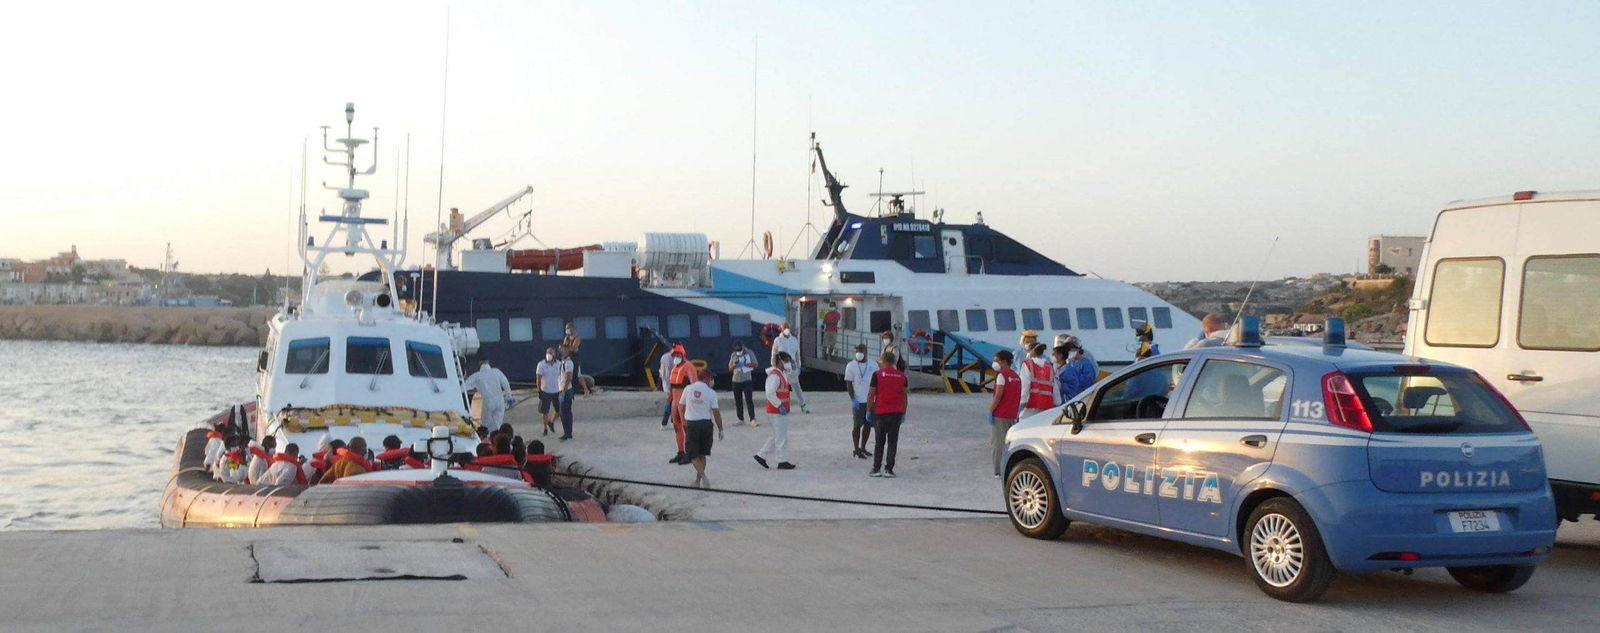 auto della polizia su una banchina con persone e soccorritori e diverse barche con persone con giubbotti di salvataggio